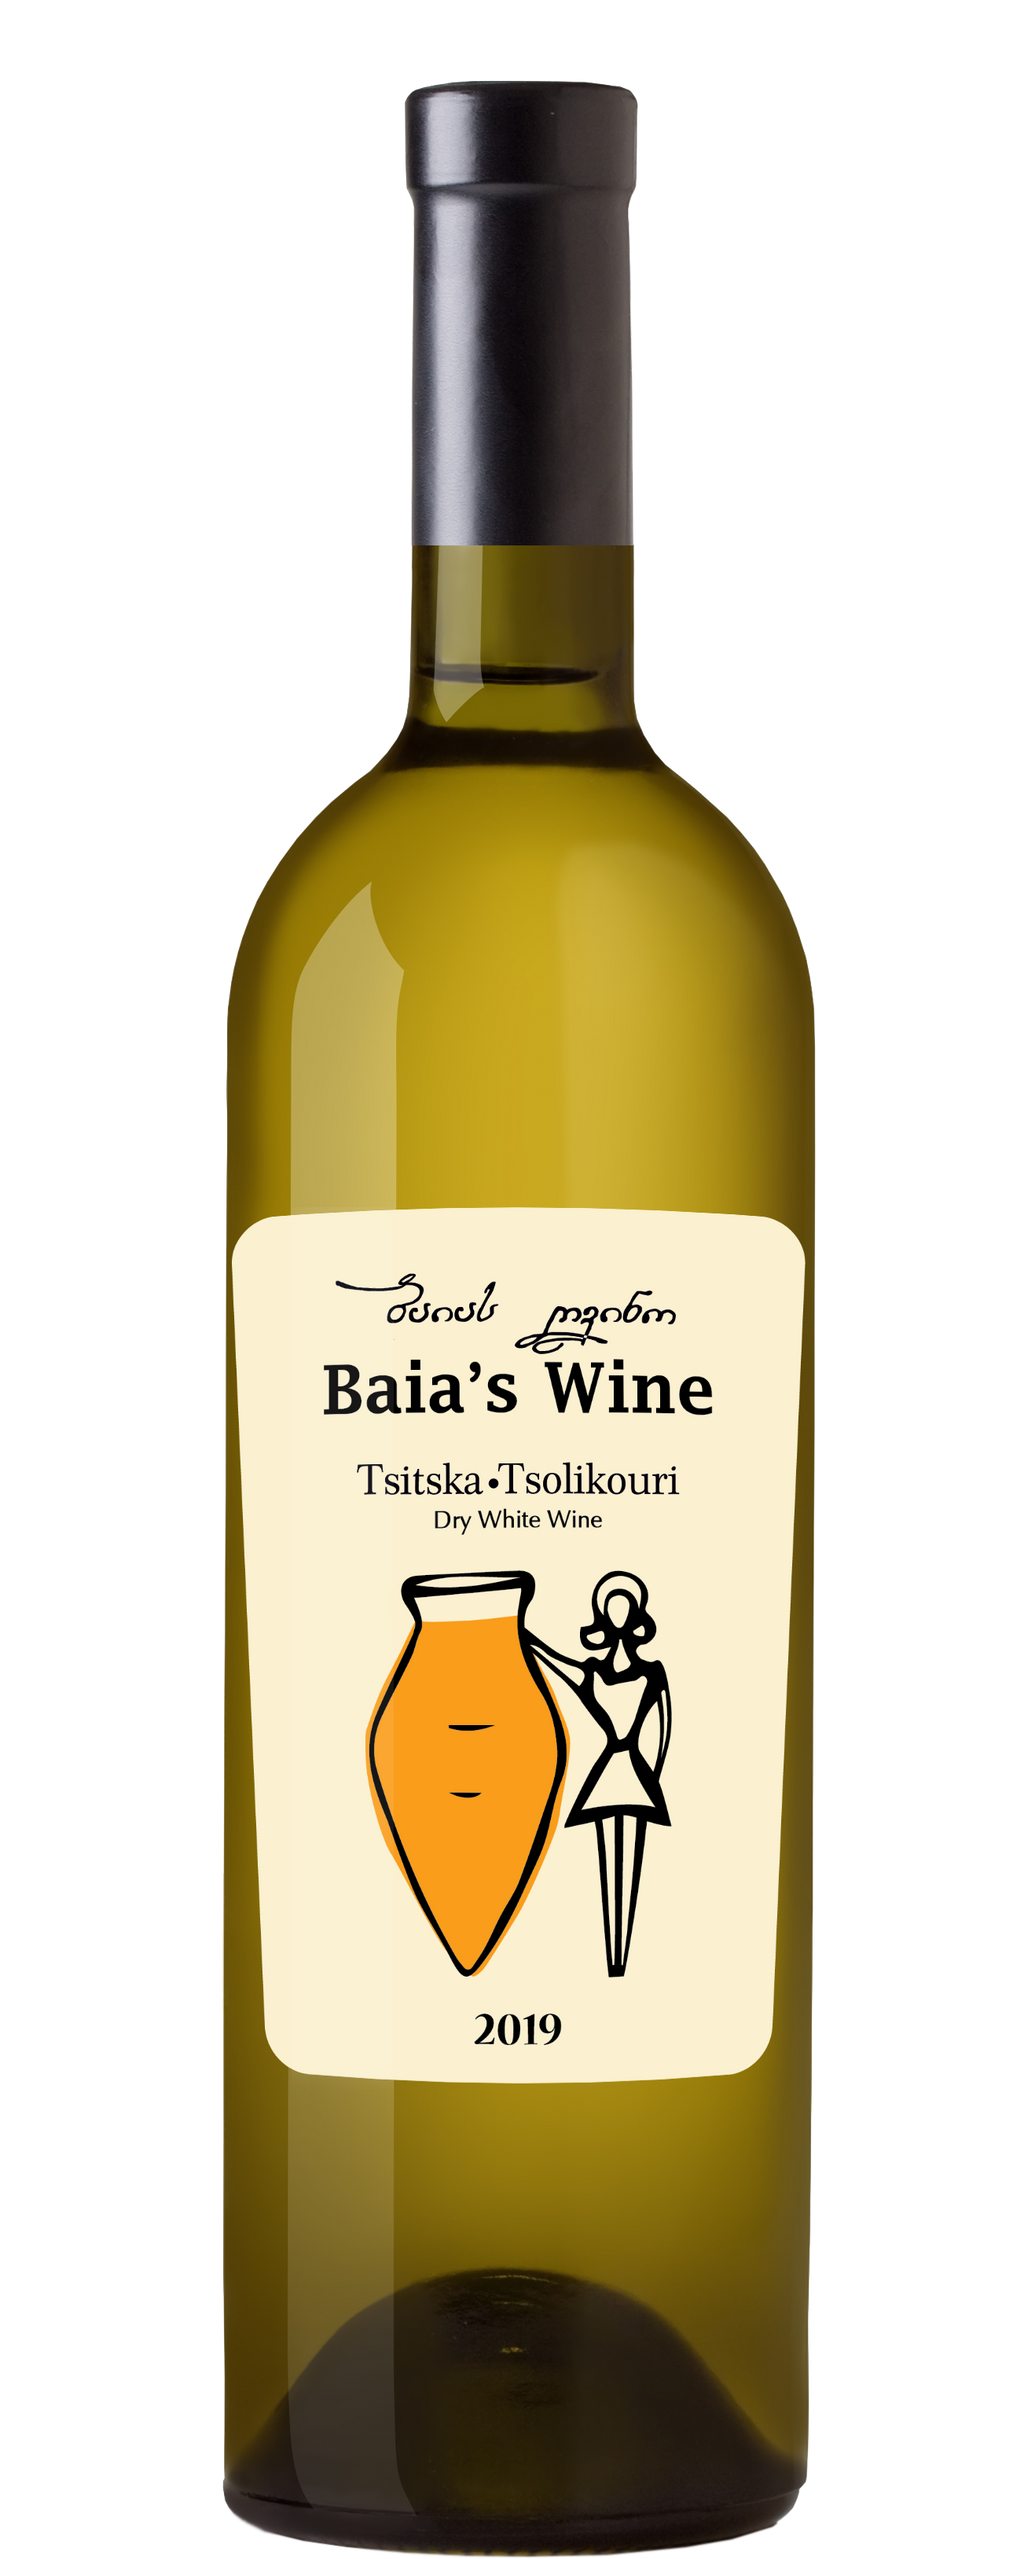 Le vin de Baia, Tsitska Tsolikouri 2019